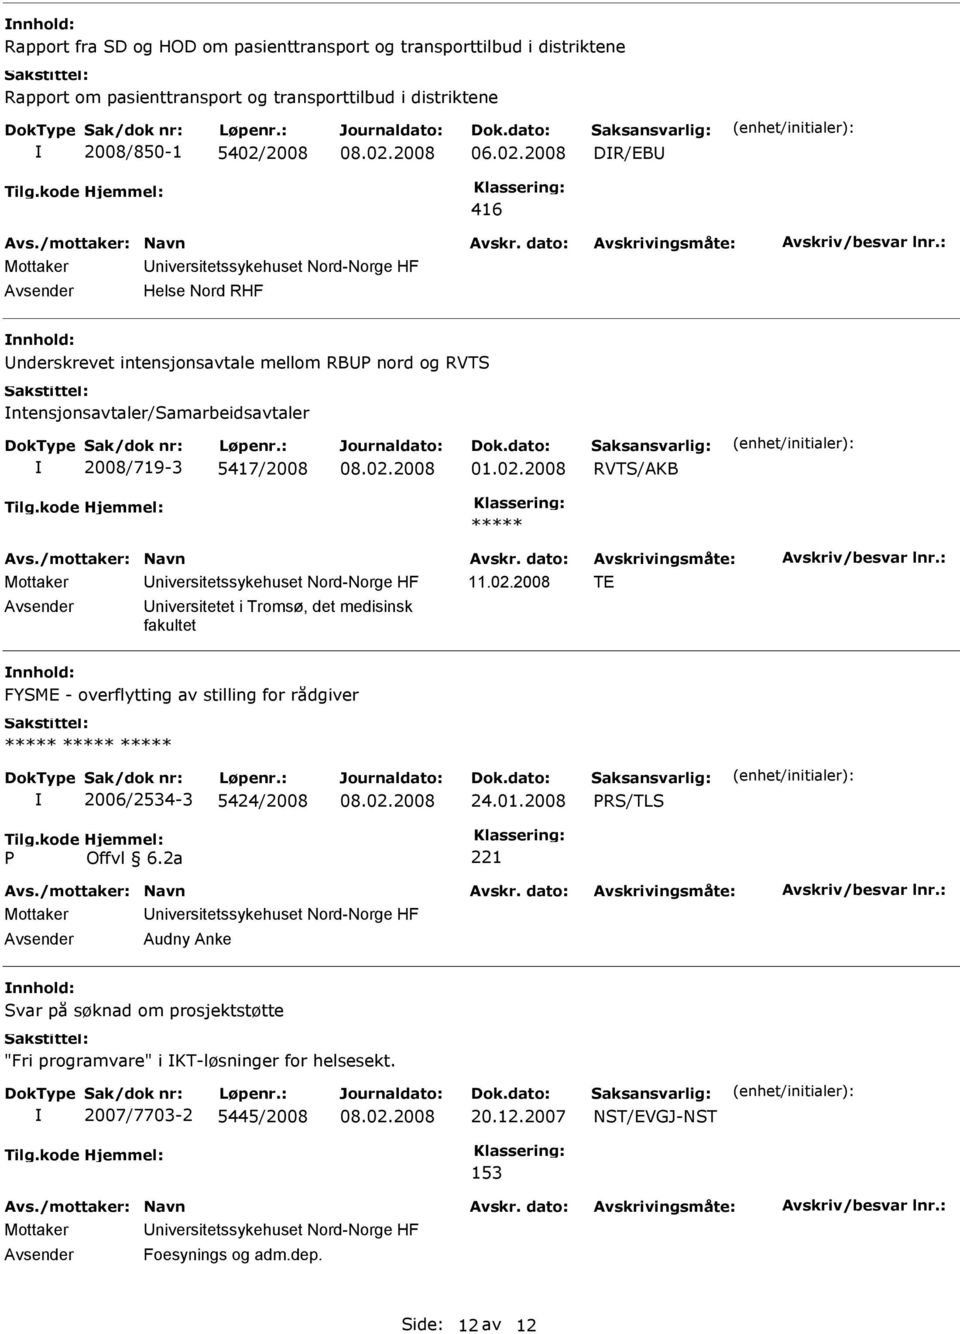 2008 RVTS/AKB ***** niversitetet i Tromsø, det medisinsk fakultet nnhold: FYSME - overflytting av stilling for rådgiver 2006/2534-3 5424/2008 24.01.